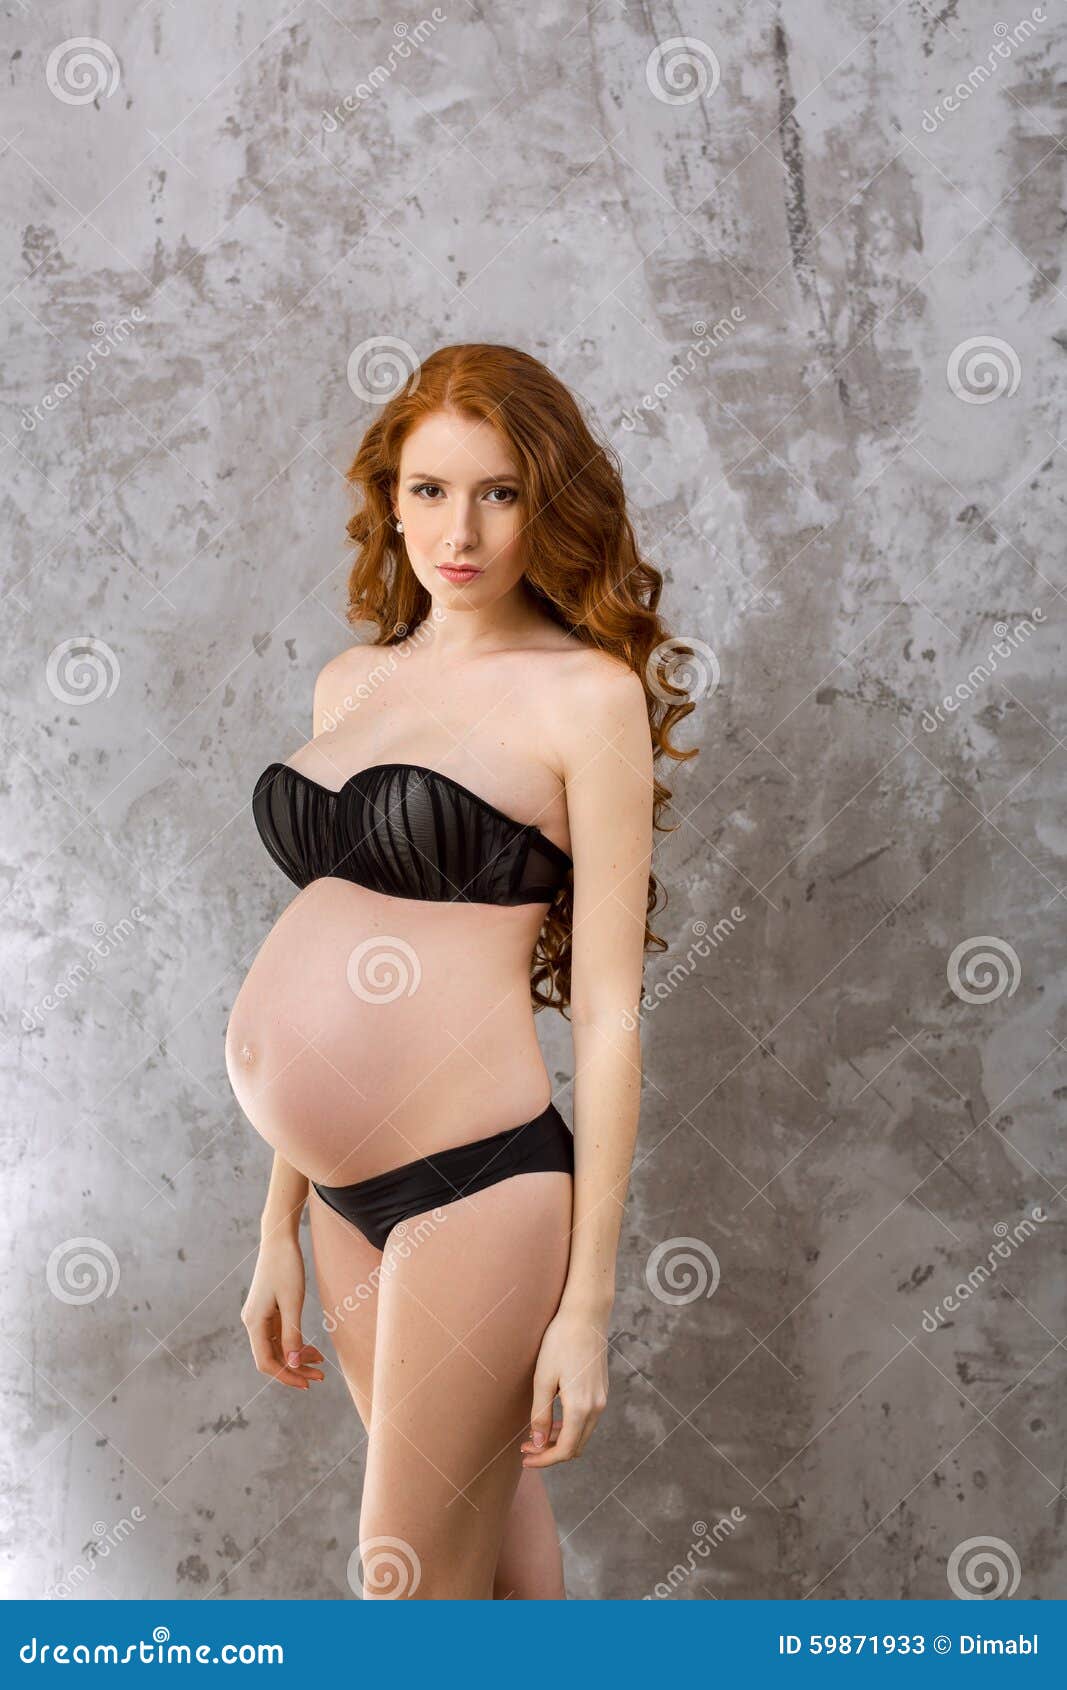 Pregnant Woman Pics 25